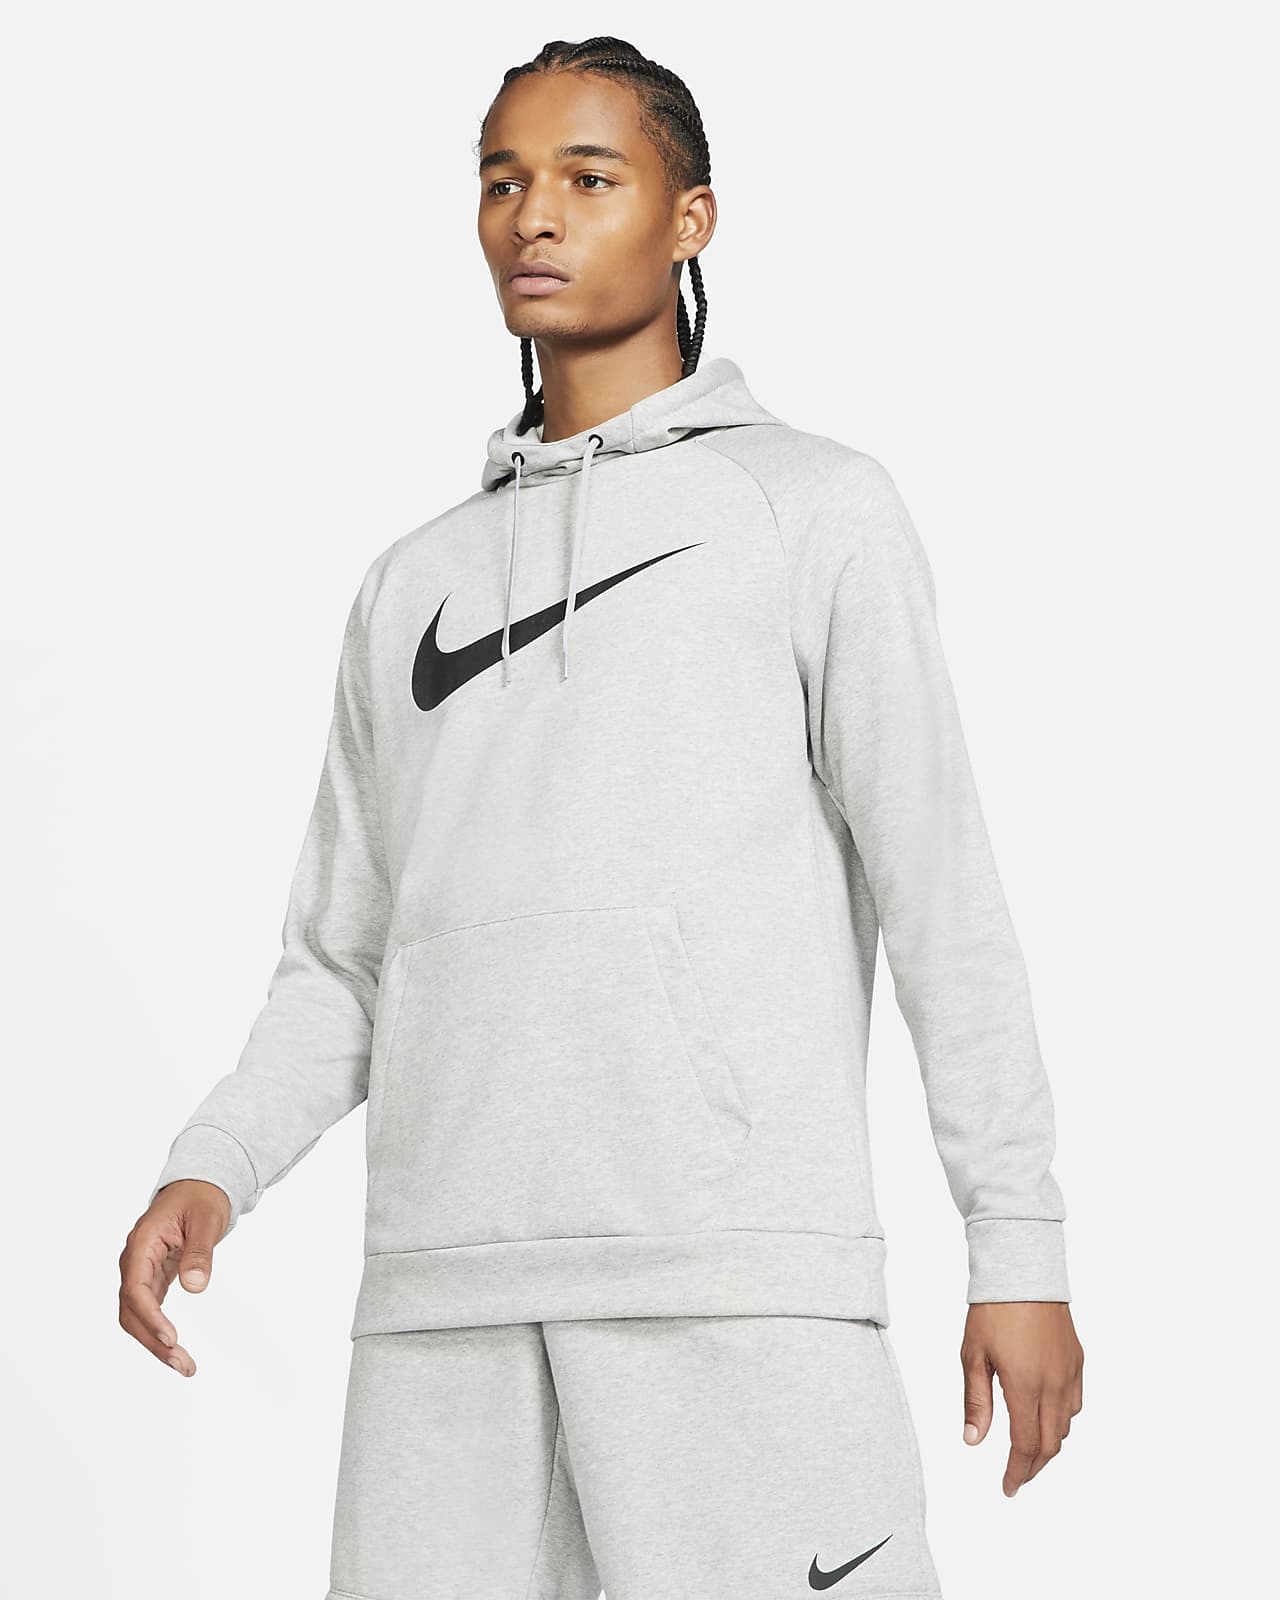 Ανδρική μπλούζα προπόνησης με κουκούλα Nike Dri-FIT